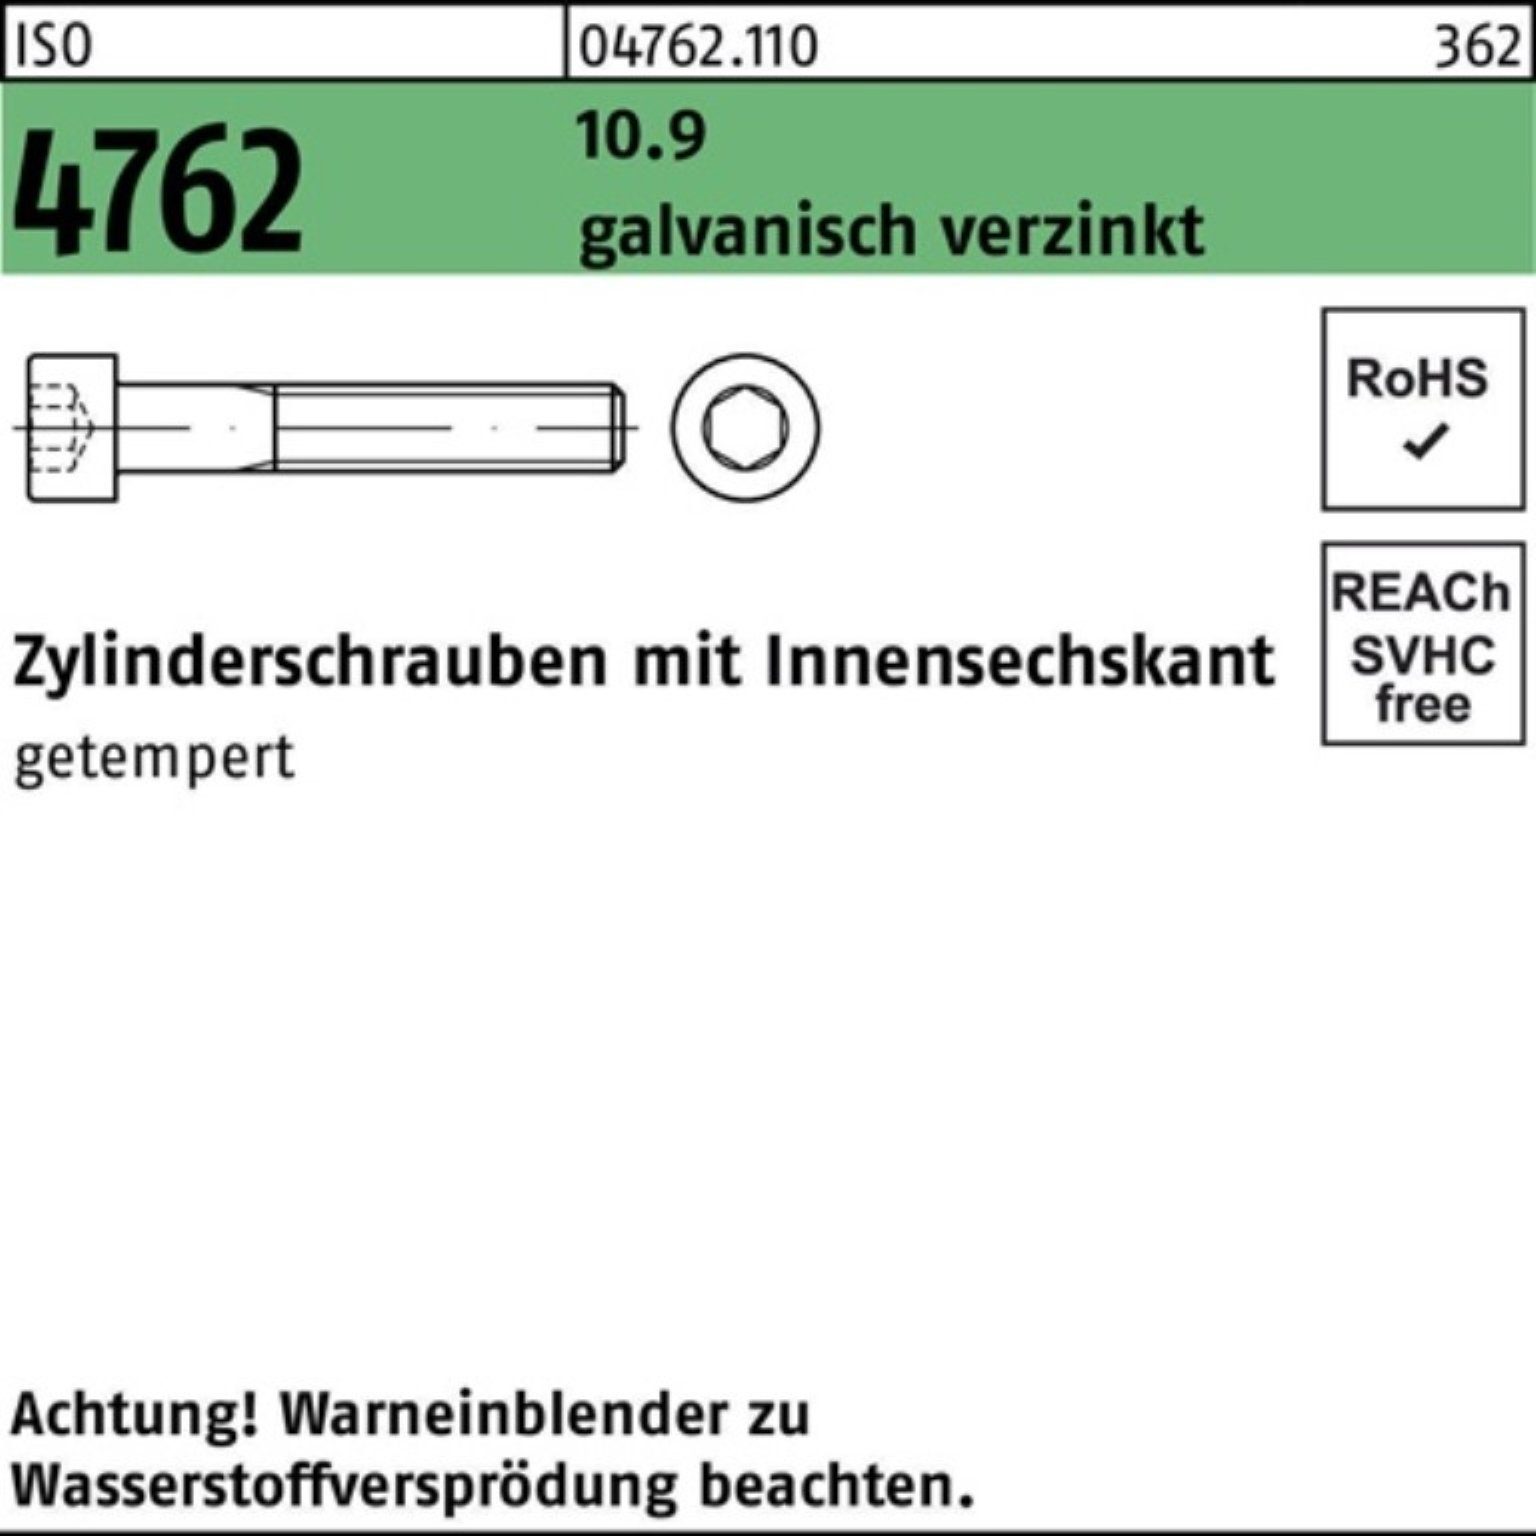 Zylinderschraube 2 200er ISO Zylinderschraube galv.verz. 4762 Reyher Innen-6kt Pack 10.9 M8x75